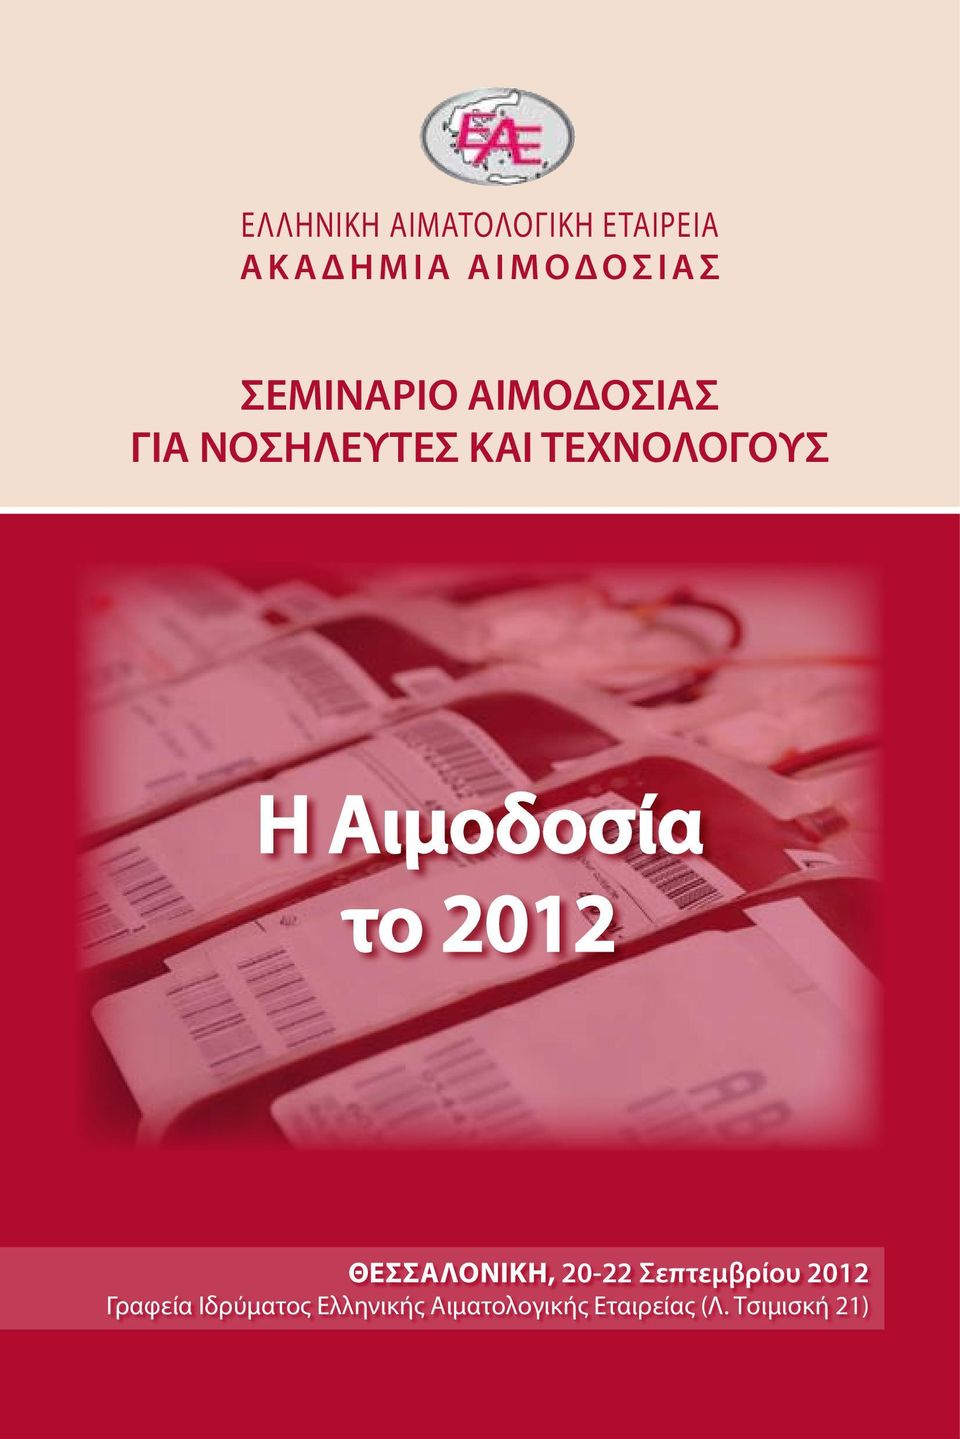 Αιμοδοσία το 2012 Θεσσαλονικη, 20-22 Σεπτεμβρίου 2012